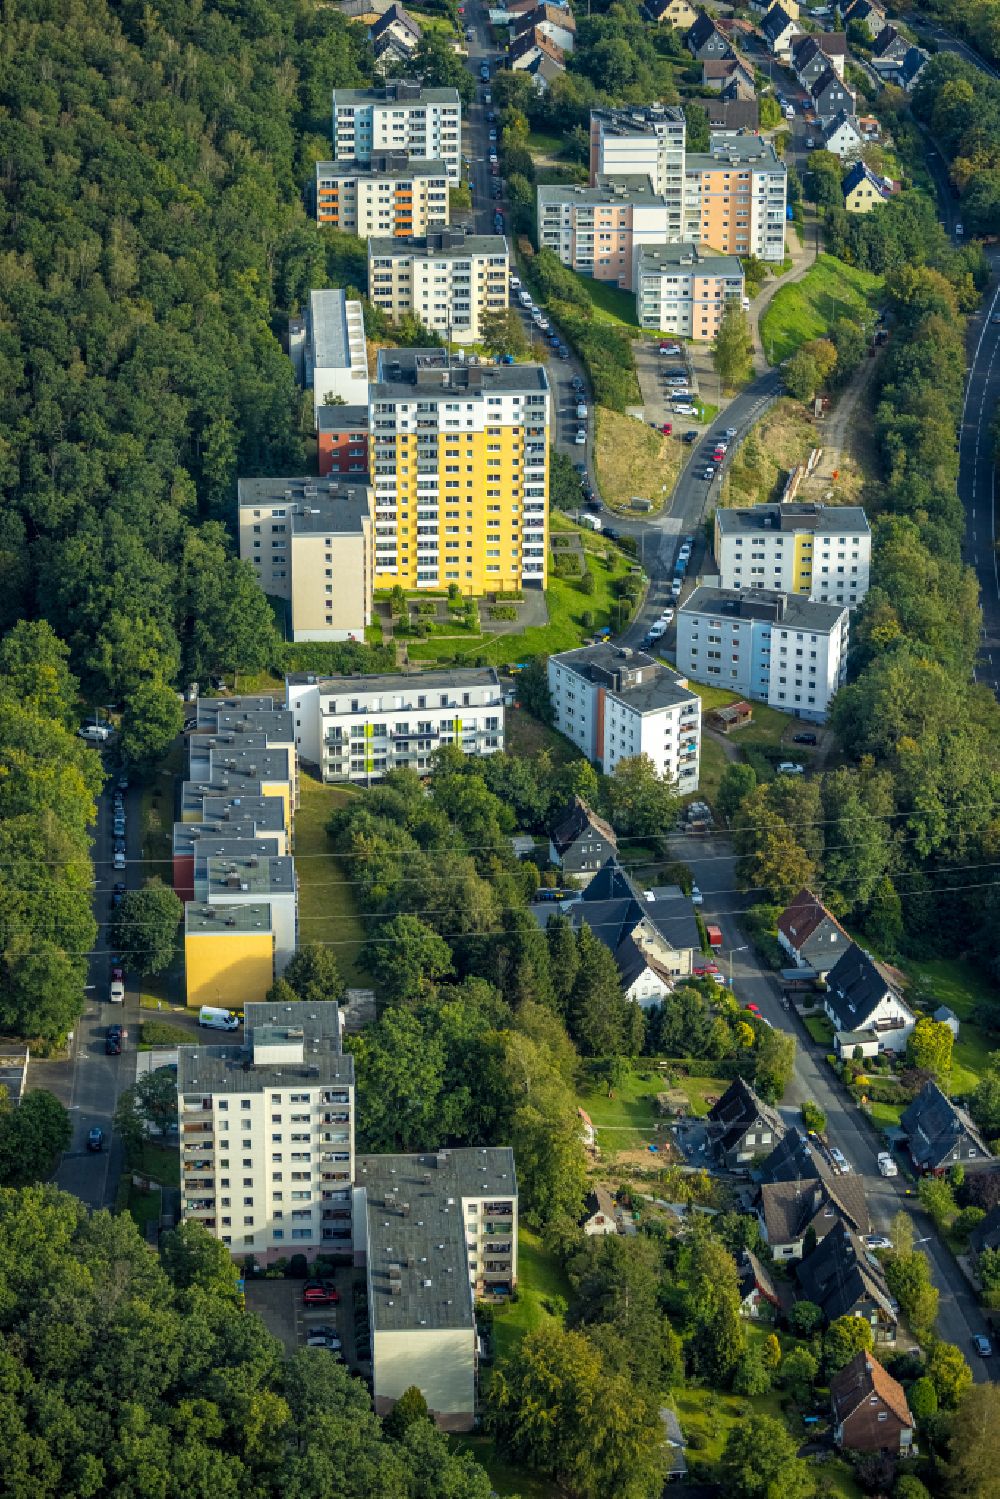 Birlenbach von oben - Plattenbau- Hochhaus- Wohnsiedlung in Birlenbach im Bundesland Nordrhein-Westfalen, Deutschland